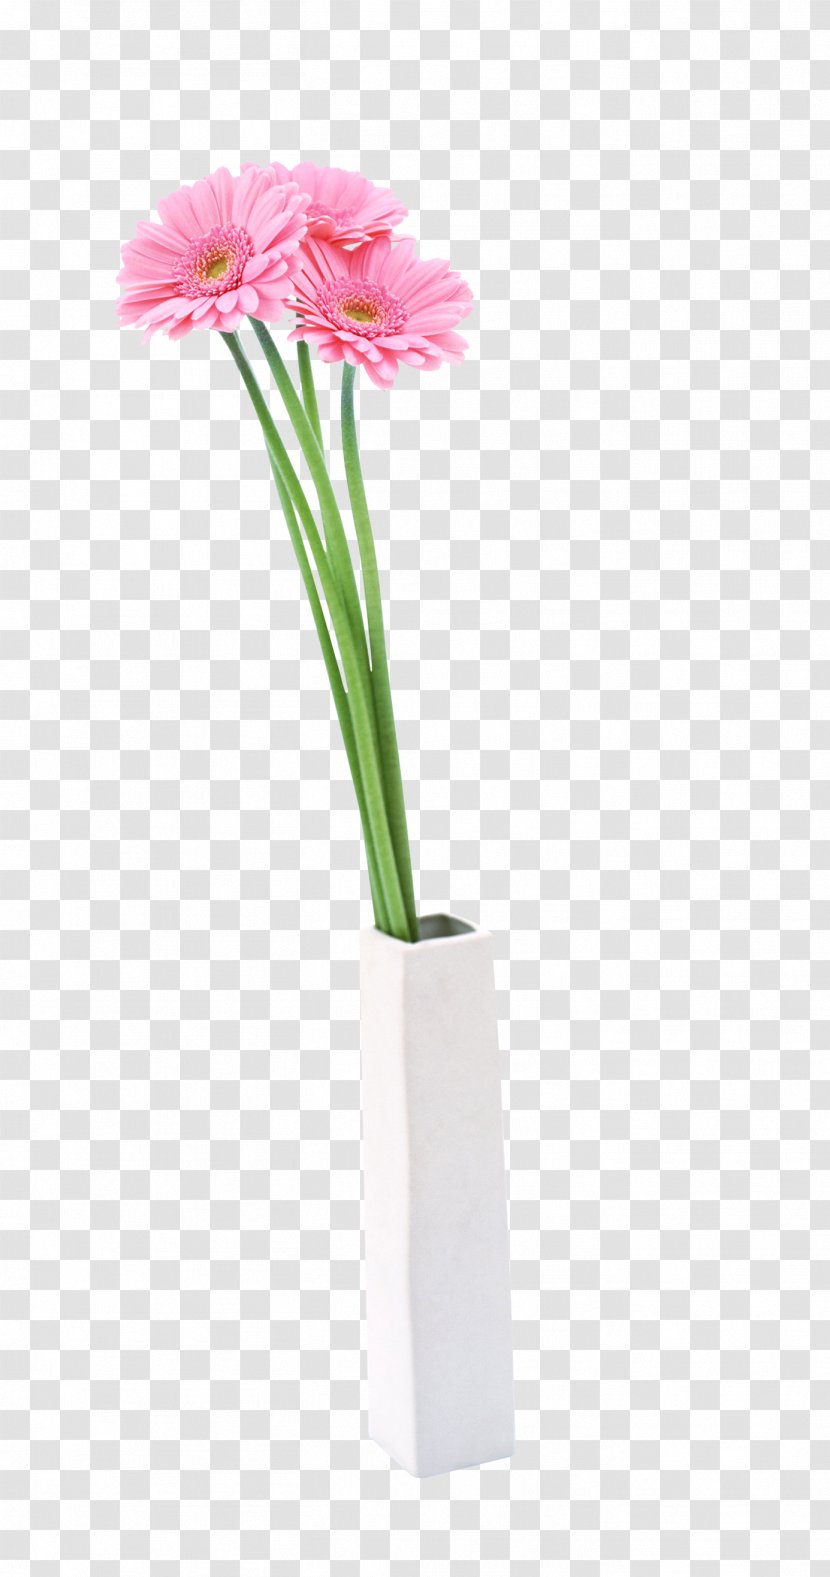 Flowerpot Vase Clip Art Image - Flower Bouquet - Ornamental Plant Transparent PNG